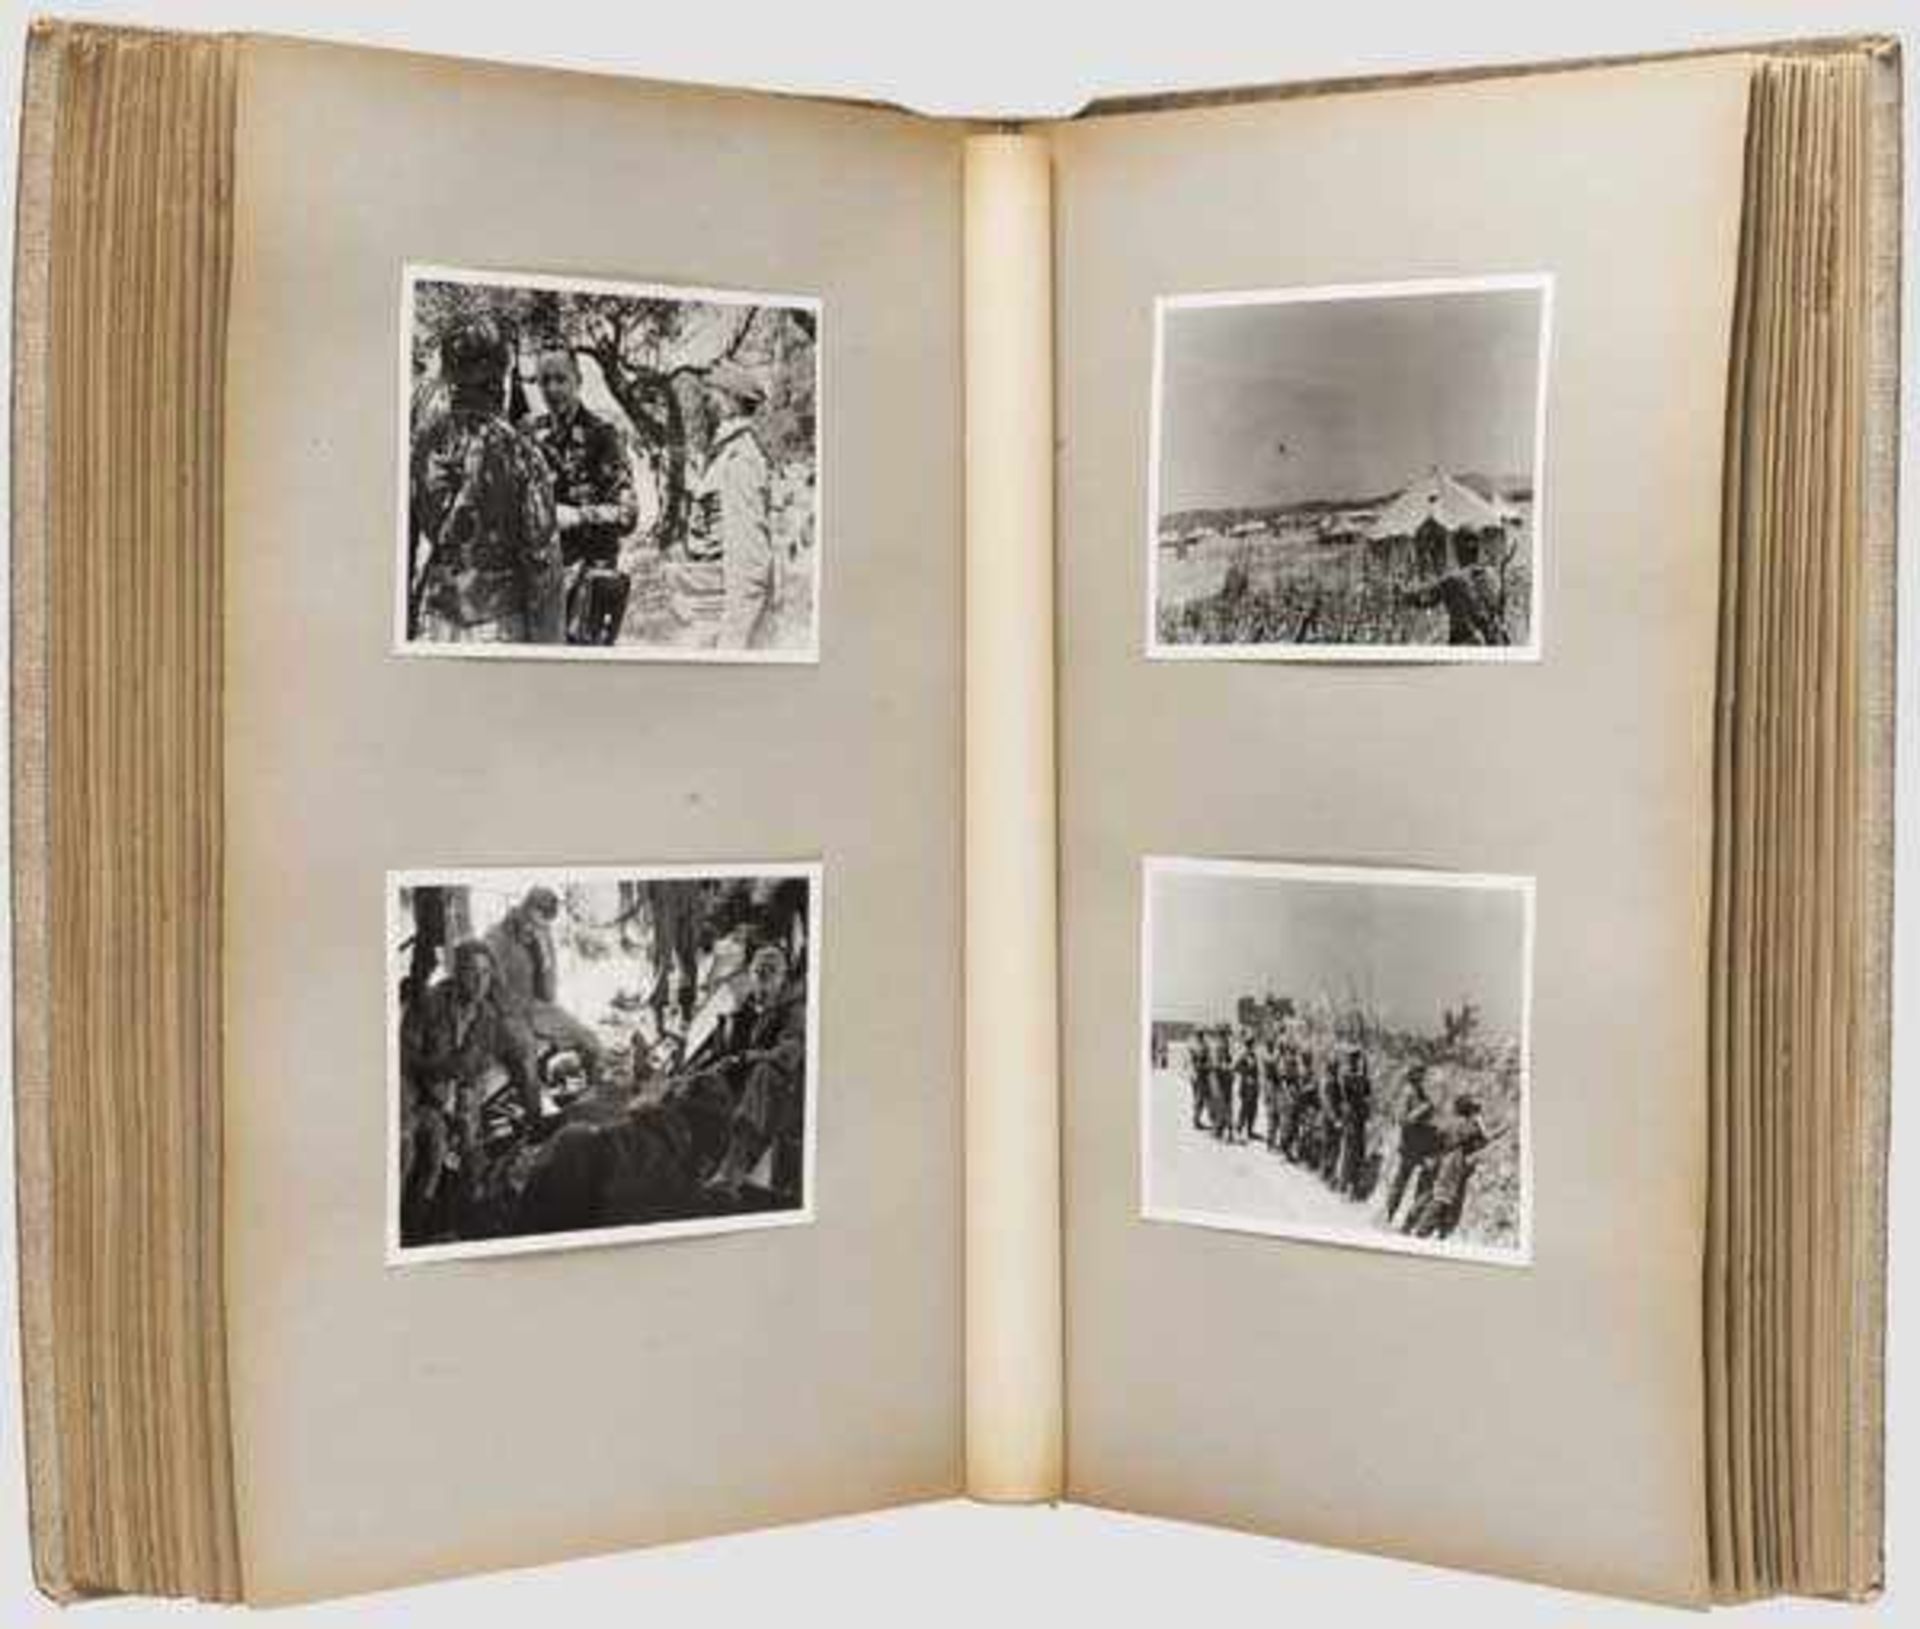 Erinnerungs-Fotoalbum - Einsatz der 3./Fallschirm-Fla.-Mg.-Btl. auf Kreta 1941 Seltenes Fotoalbum, - Bild 2 aus 7